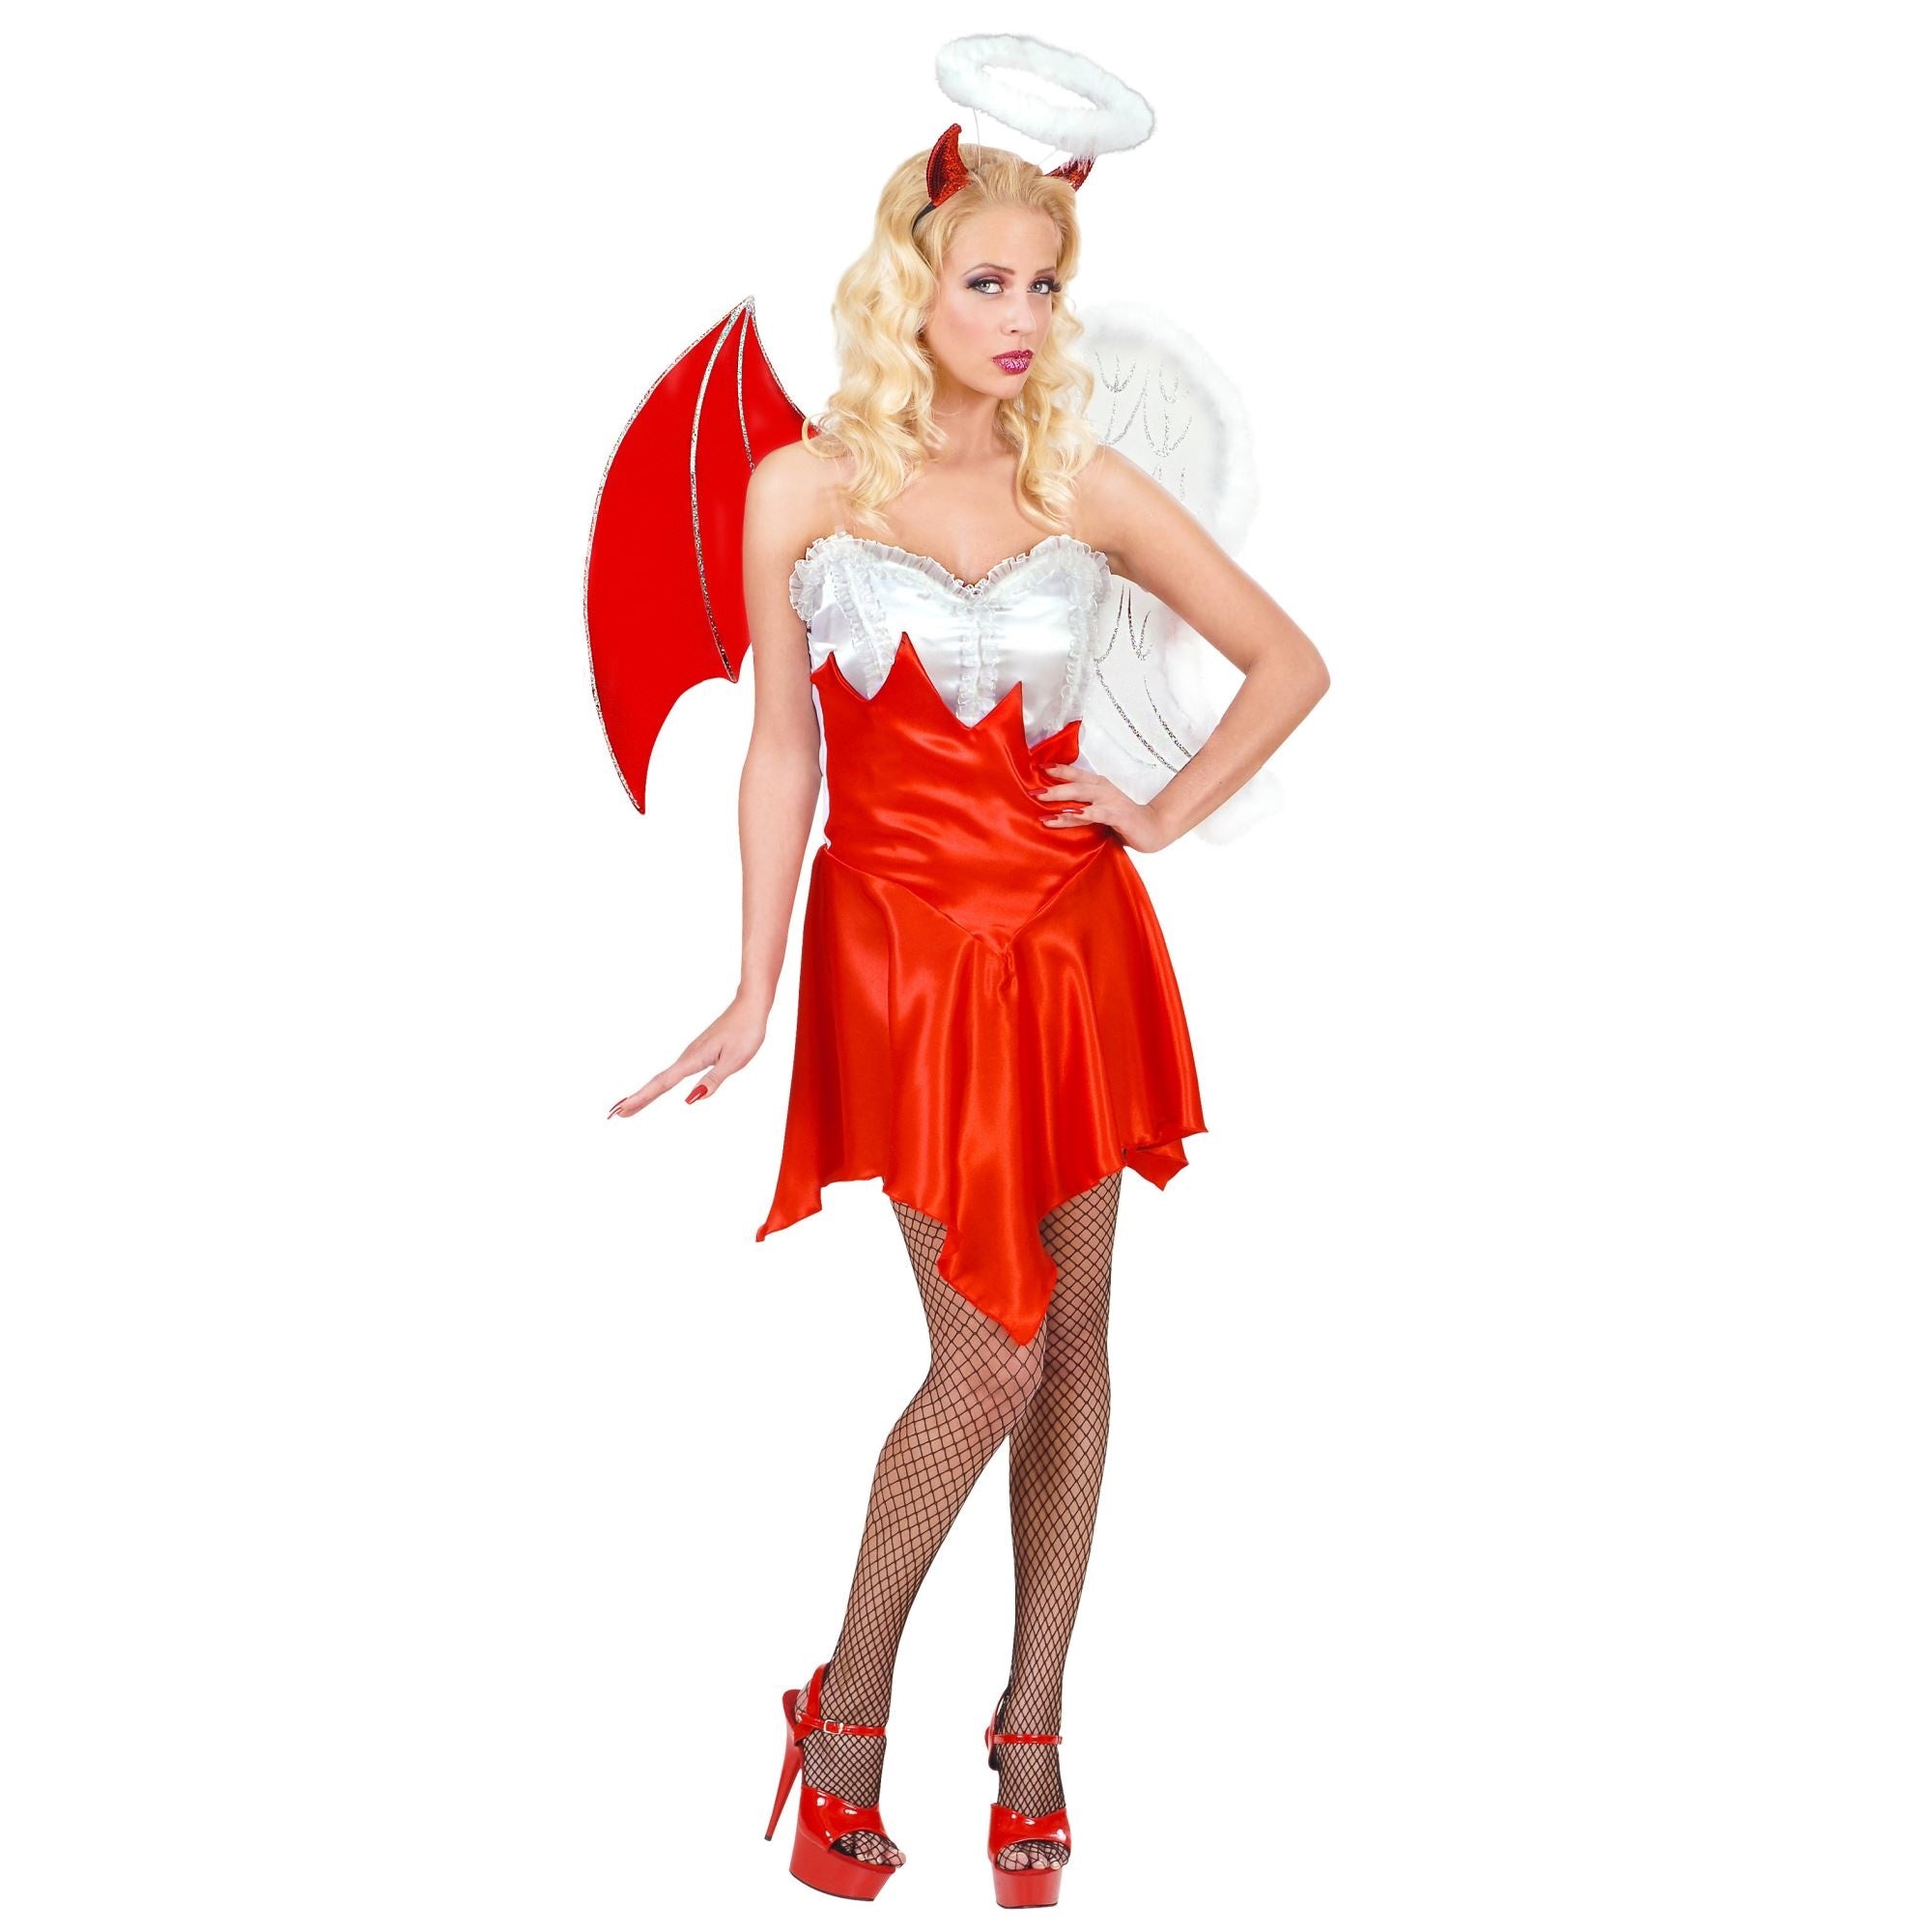 "Engel en Duivel Halloween kostuum voor vrouwen - Verkleedkleding - Small"